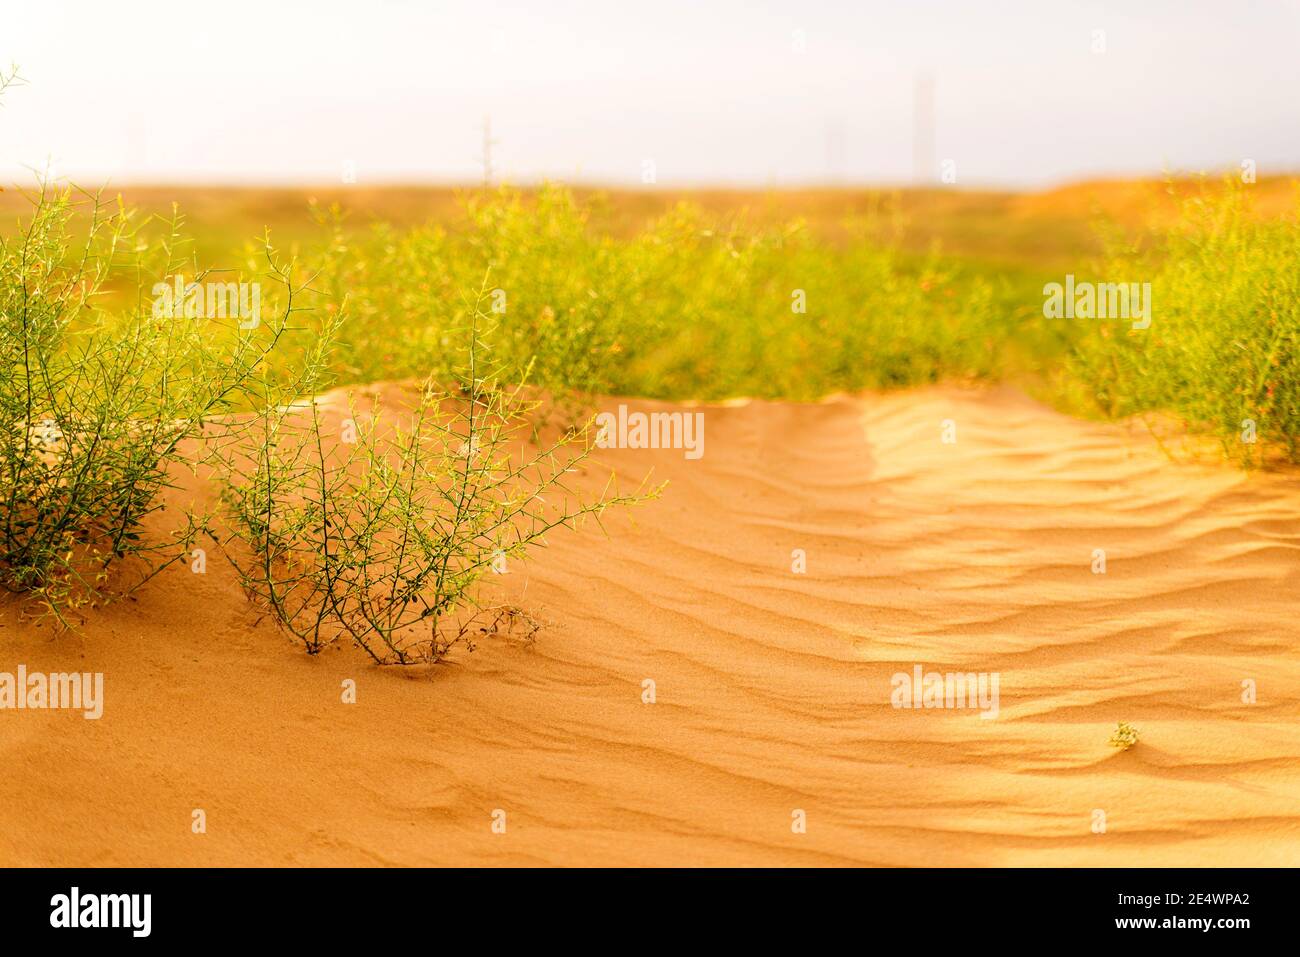 Wüstenpflanze. Kameldornpflanze. Grüner Busch in der Wüste. Grünes Gras auf getrocknetem Boden. Wüstenboden. Wüstenlandschaft im Sommer. Stockfoto